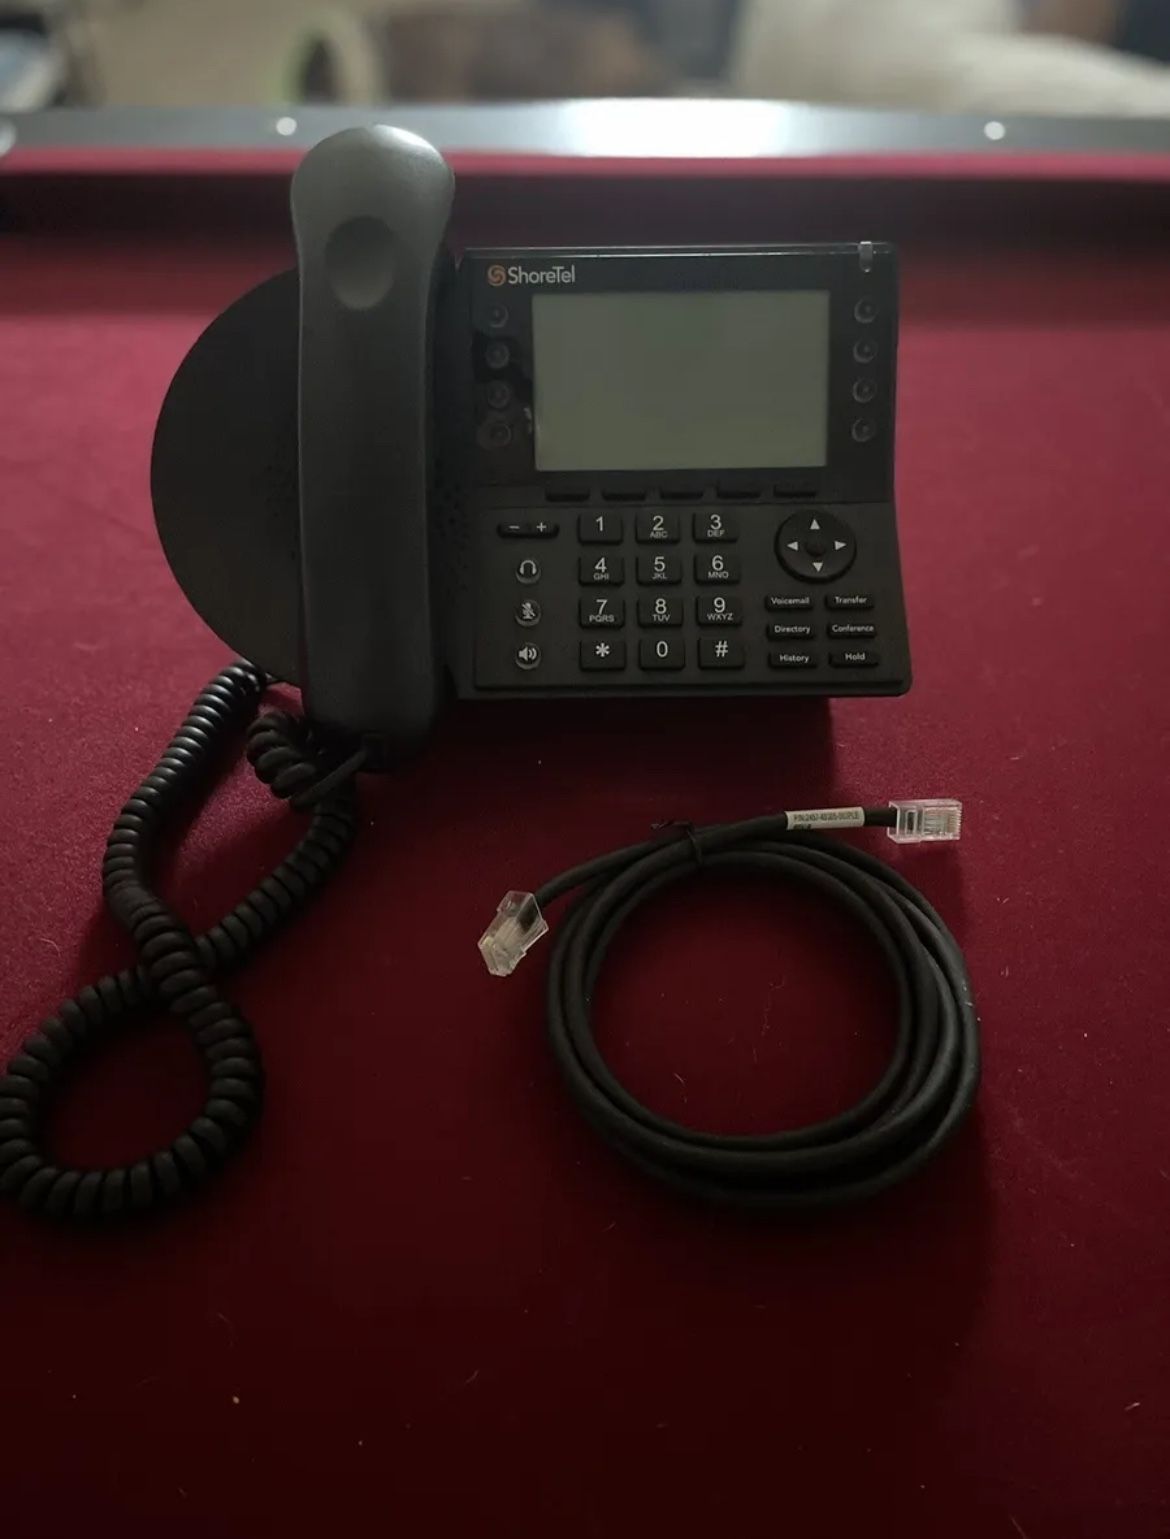 ShoreTel 480G Gigabit IP Phone (10497)